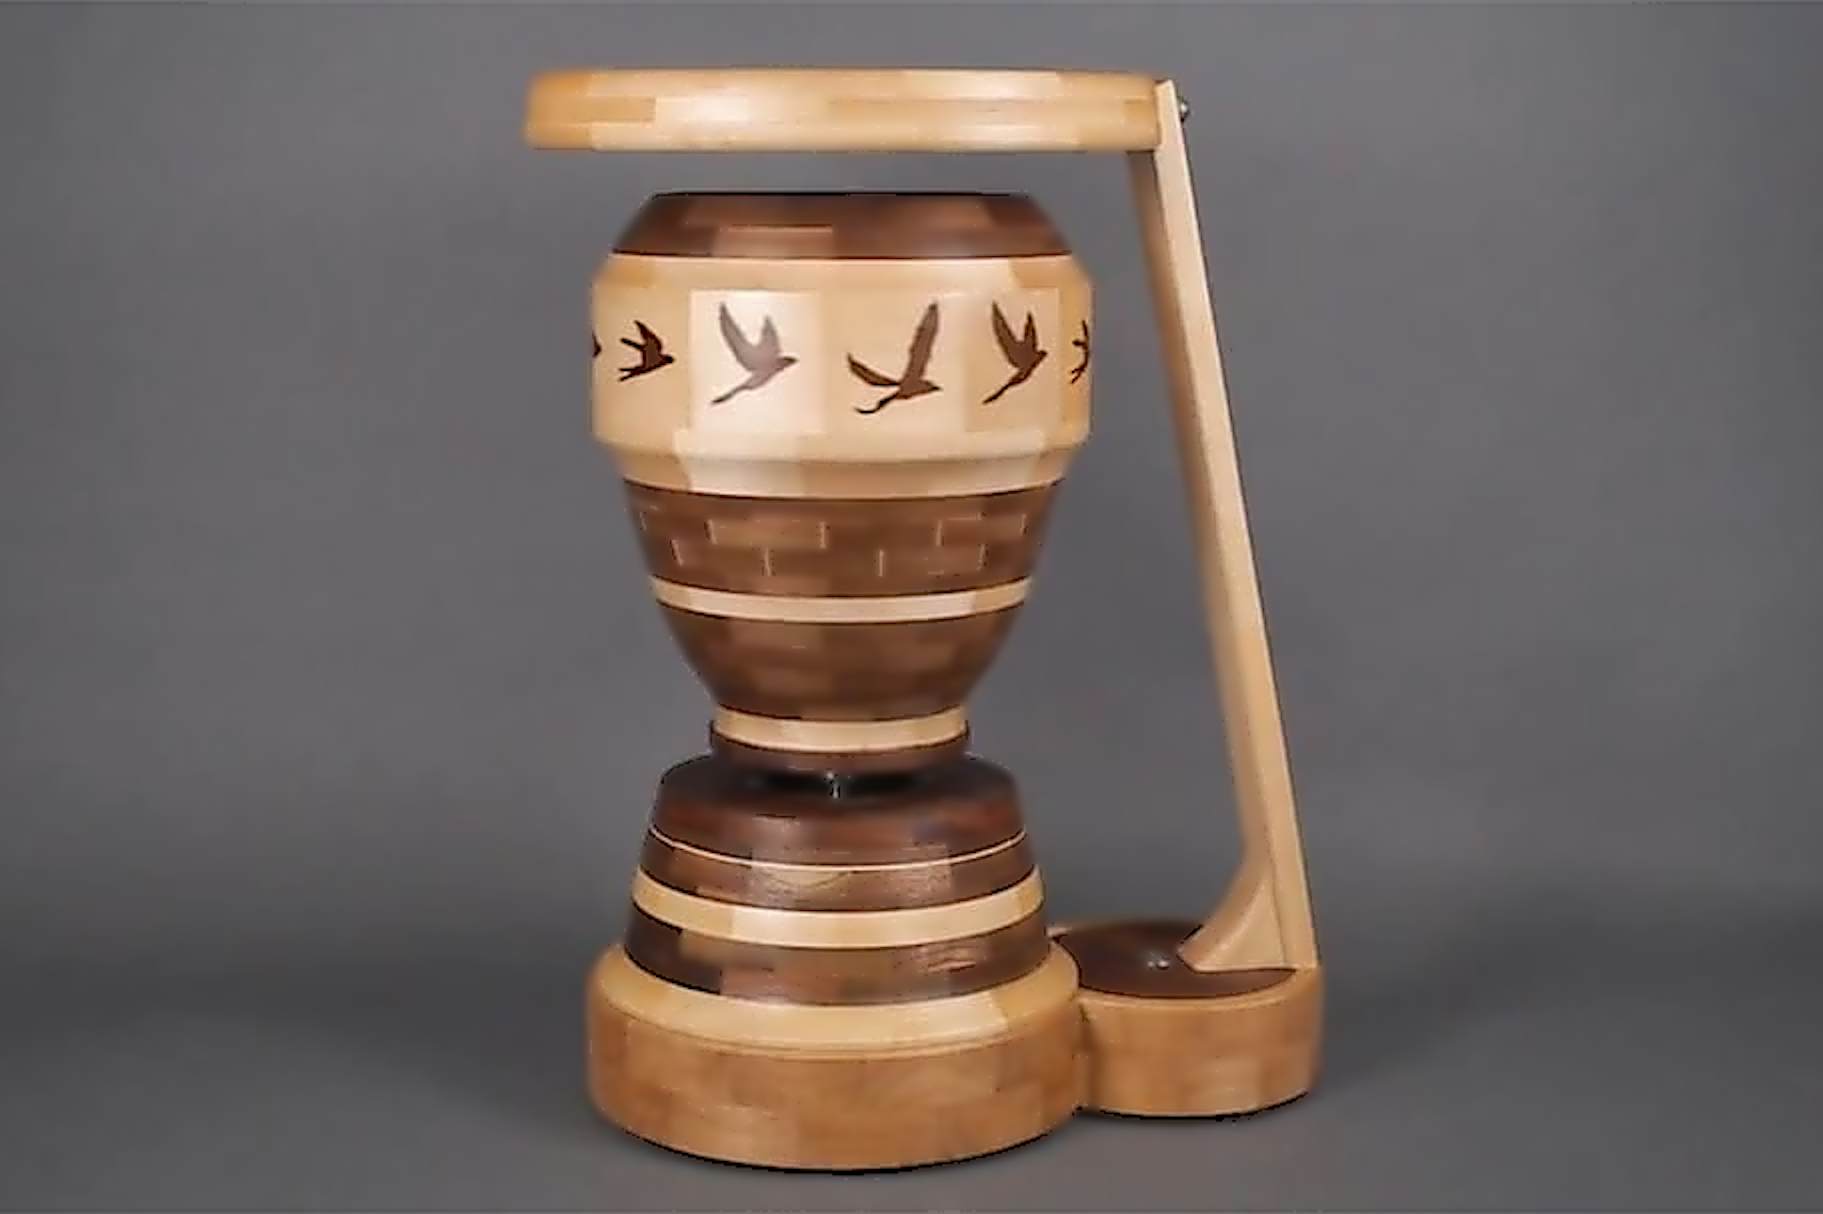 Die Shaper Origin fertigt Zoetrope mit 12 in Holz eingelassenen Vogel-Bewegtbildern nach Maß.